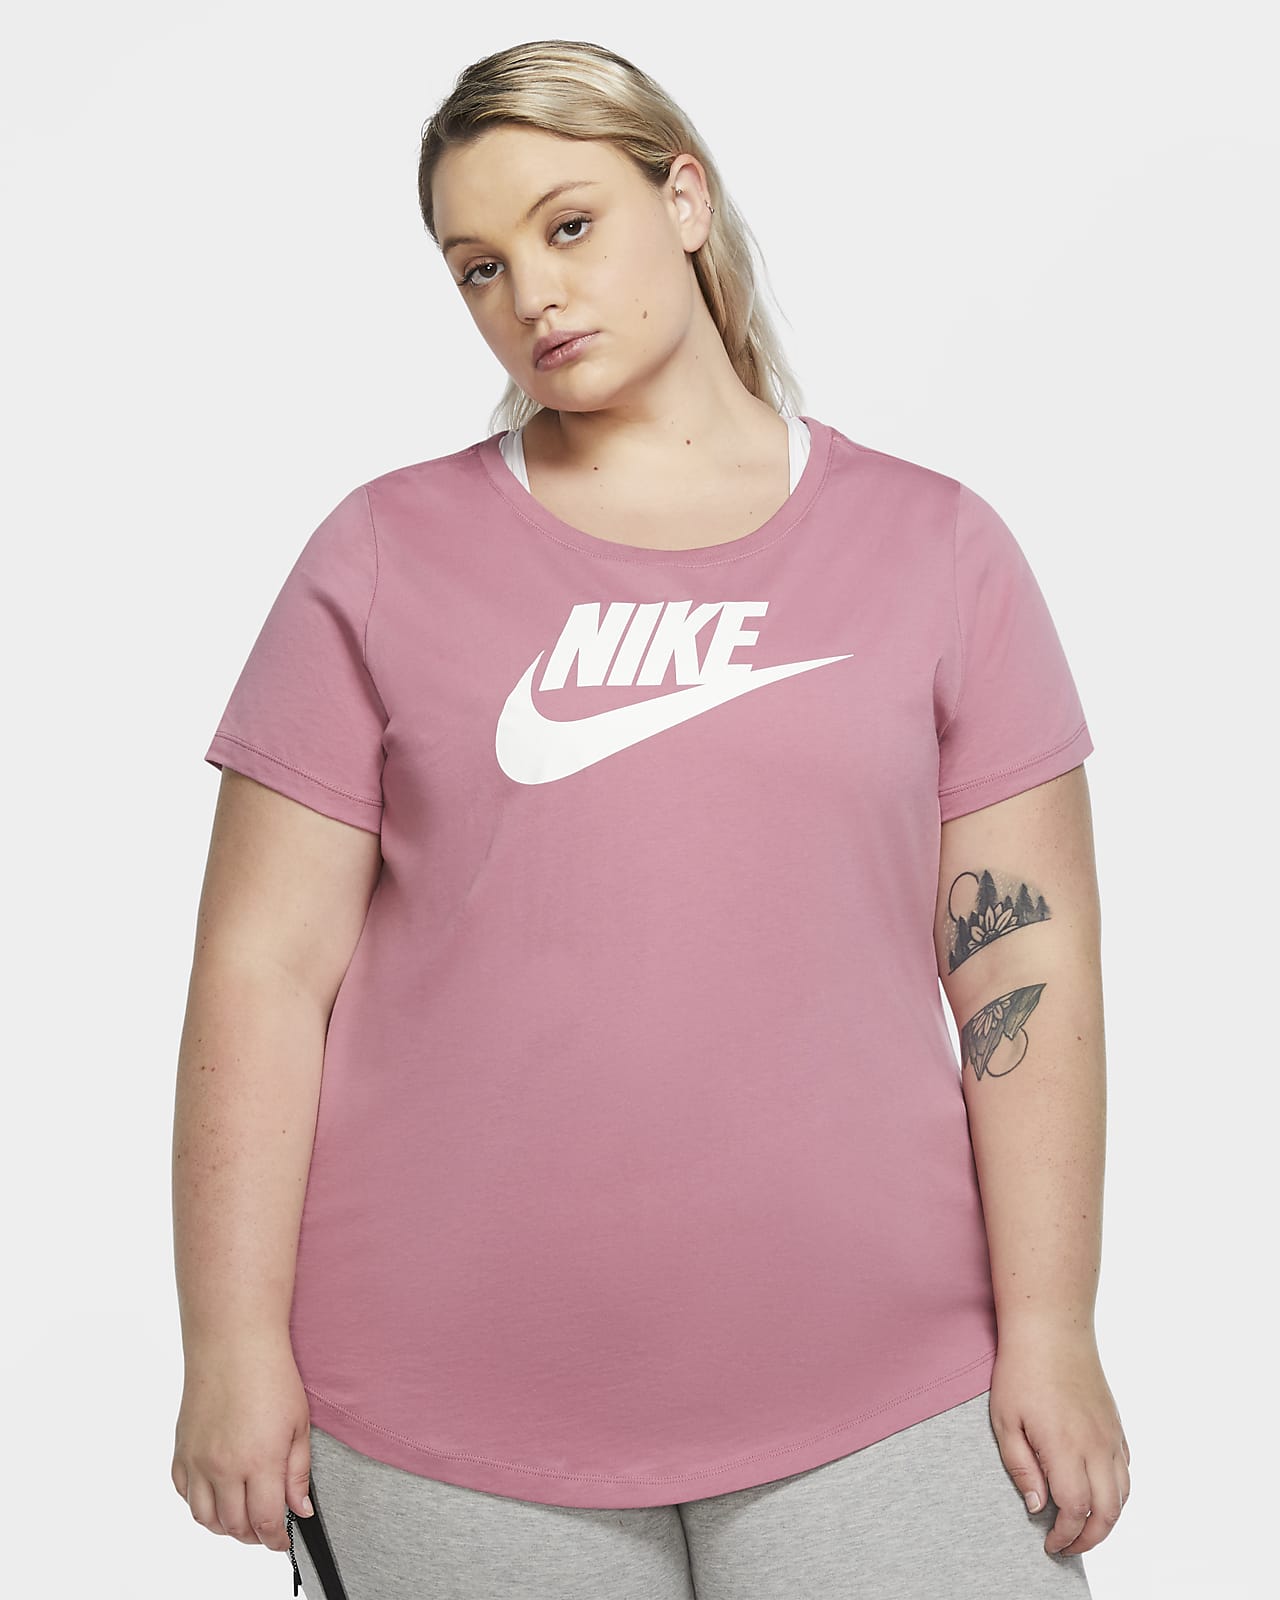 pink nike shirt plus size